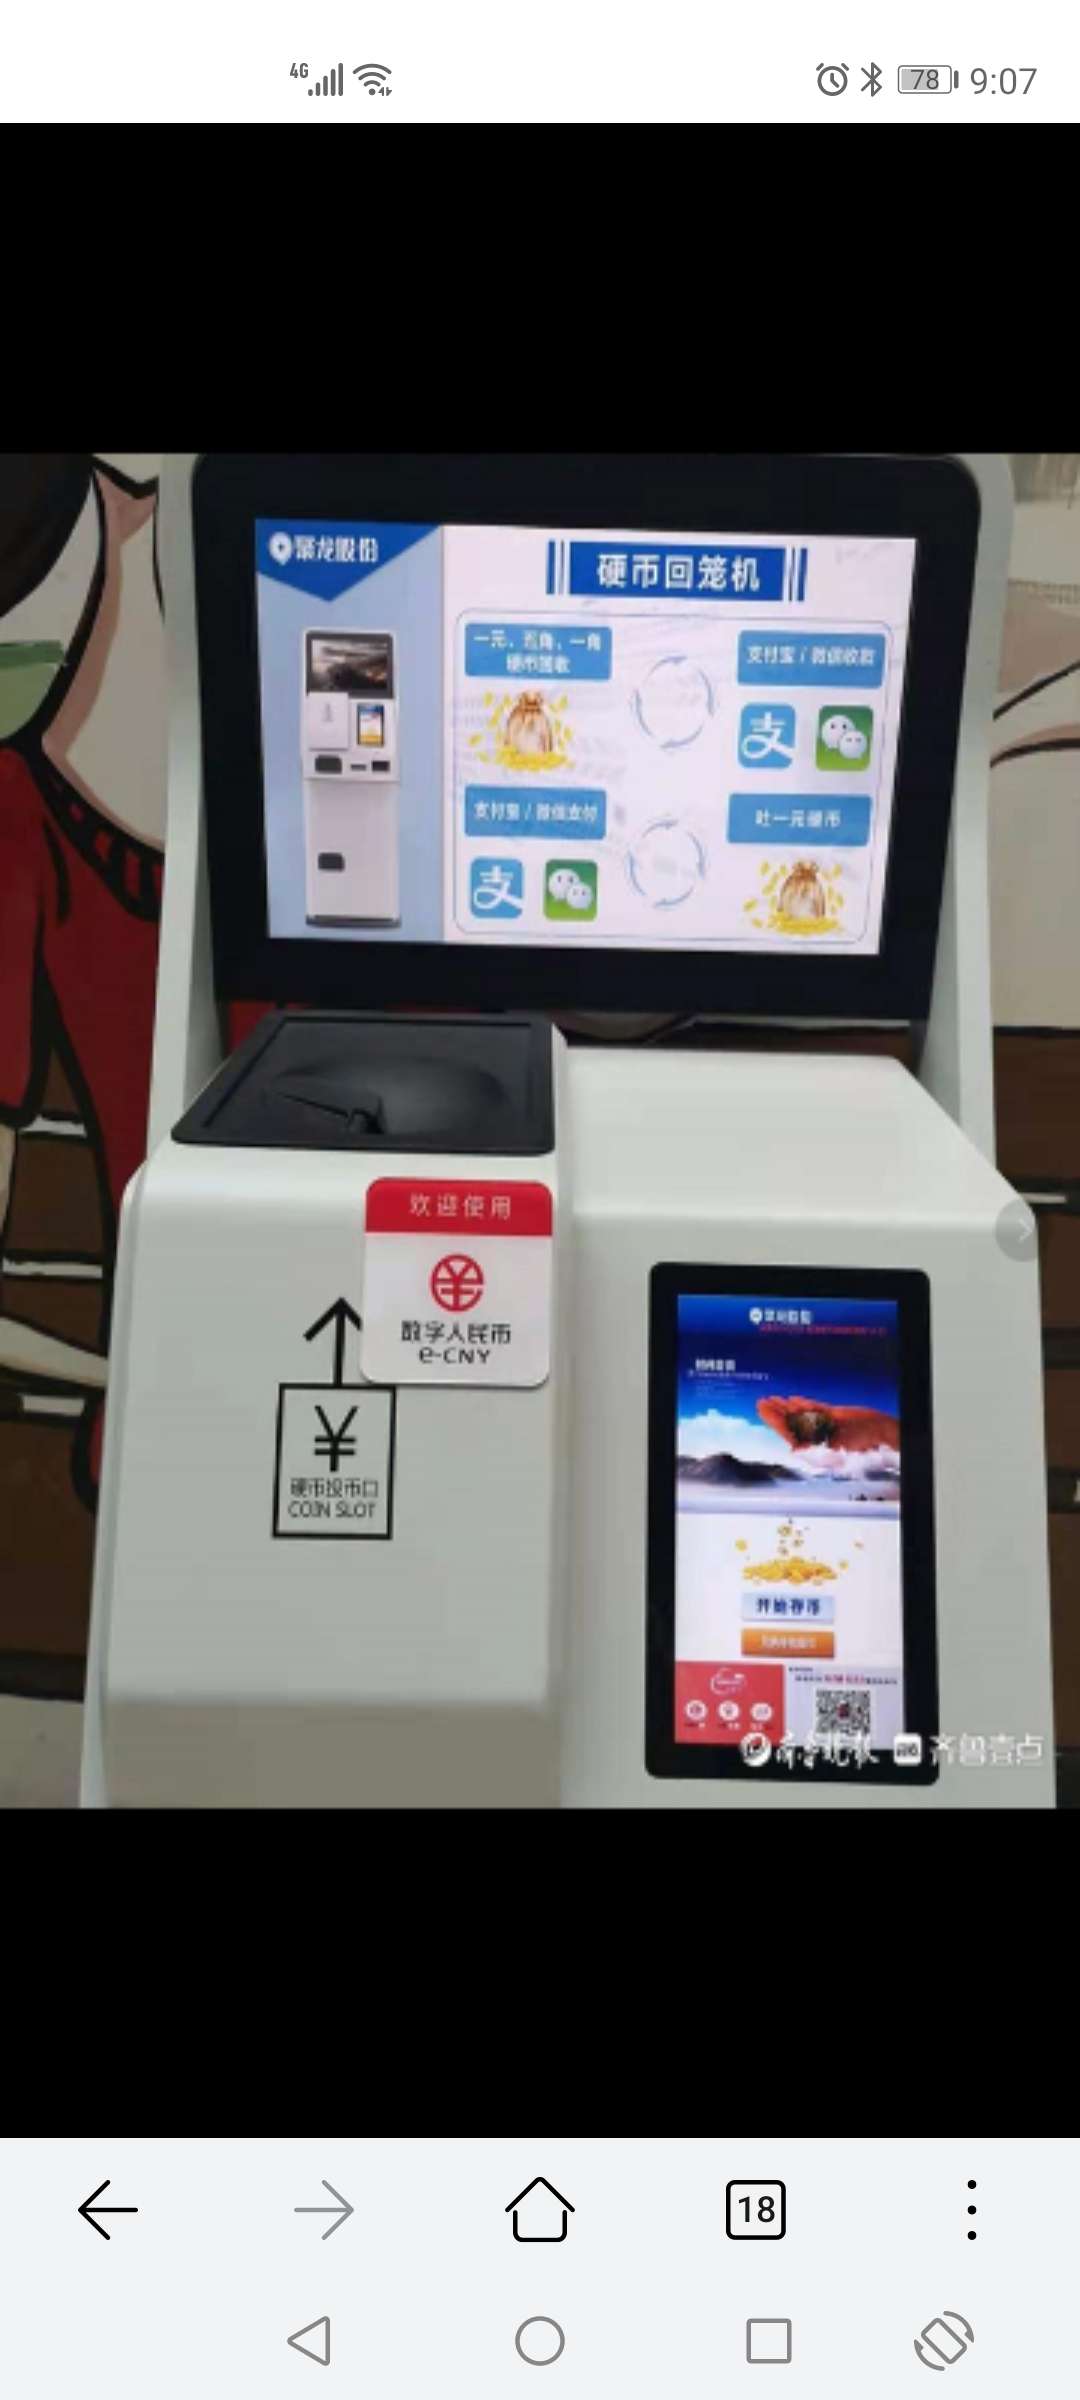 青岛的崂山丽达购物广场用的是聚龙股份数字人民币兑换机